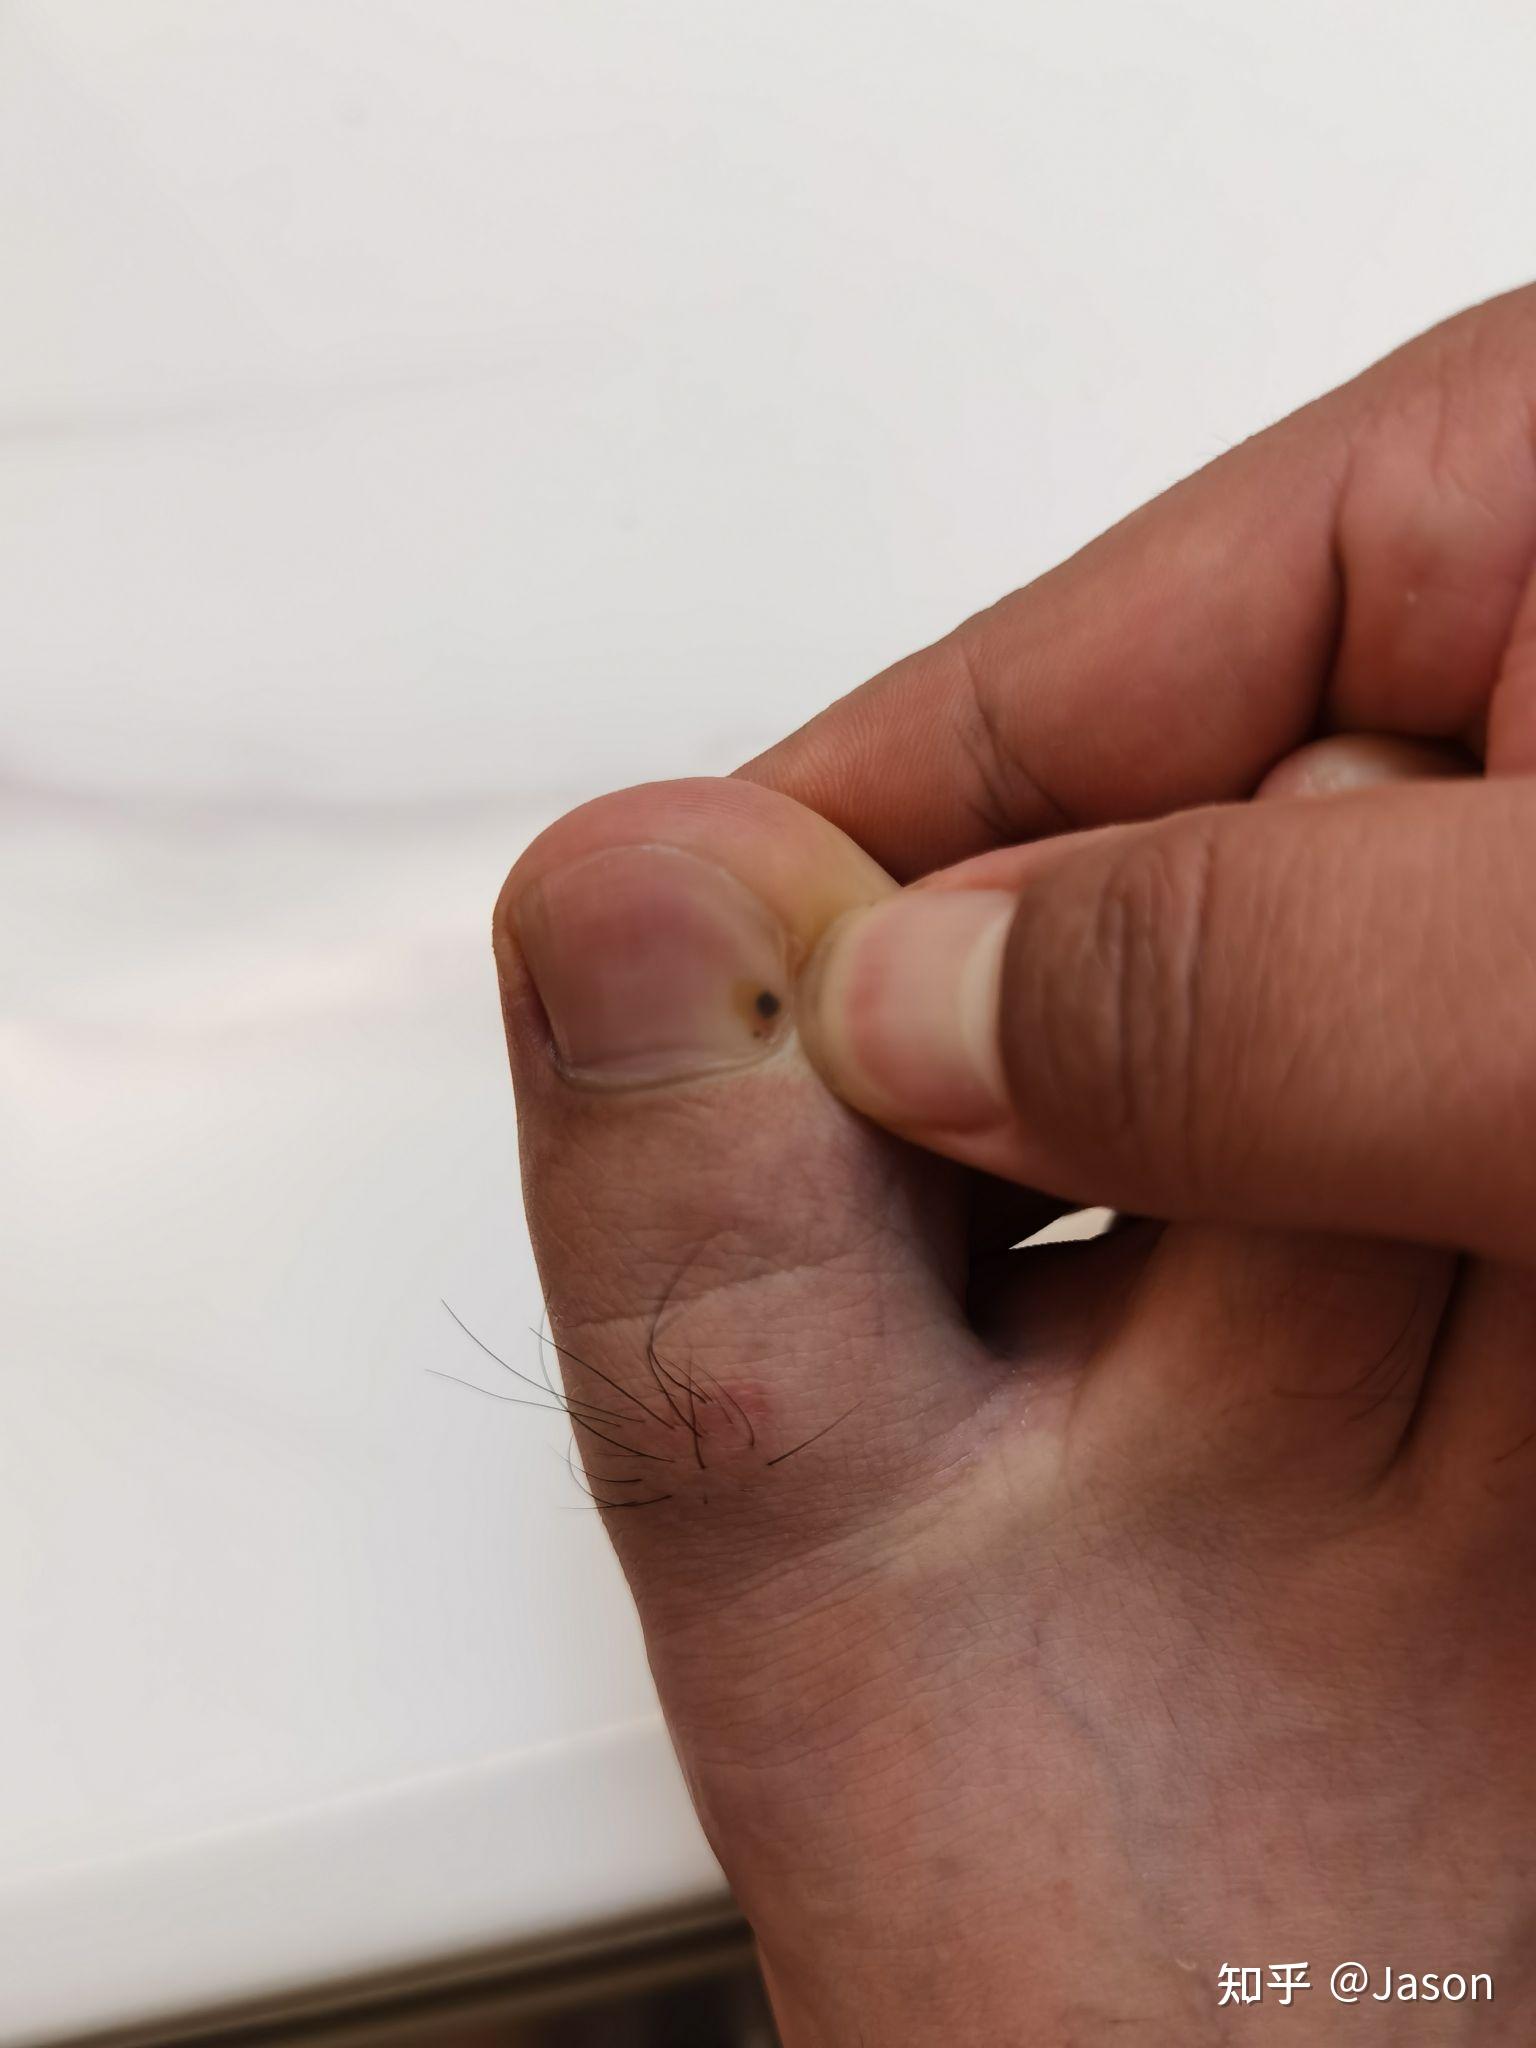 脚大拇指有黑块是癌图片